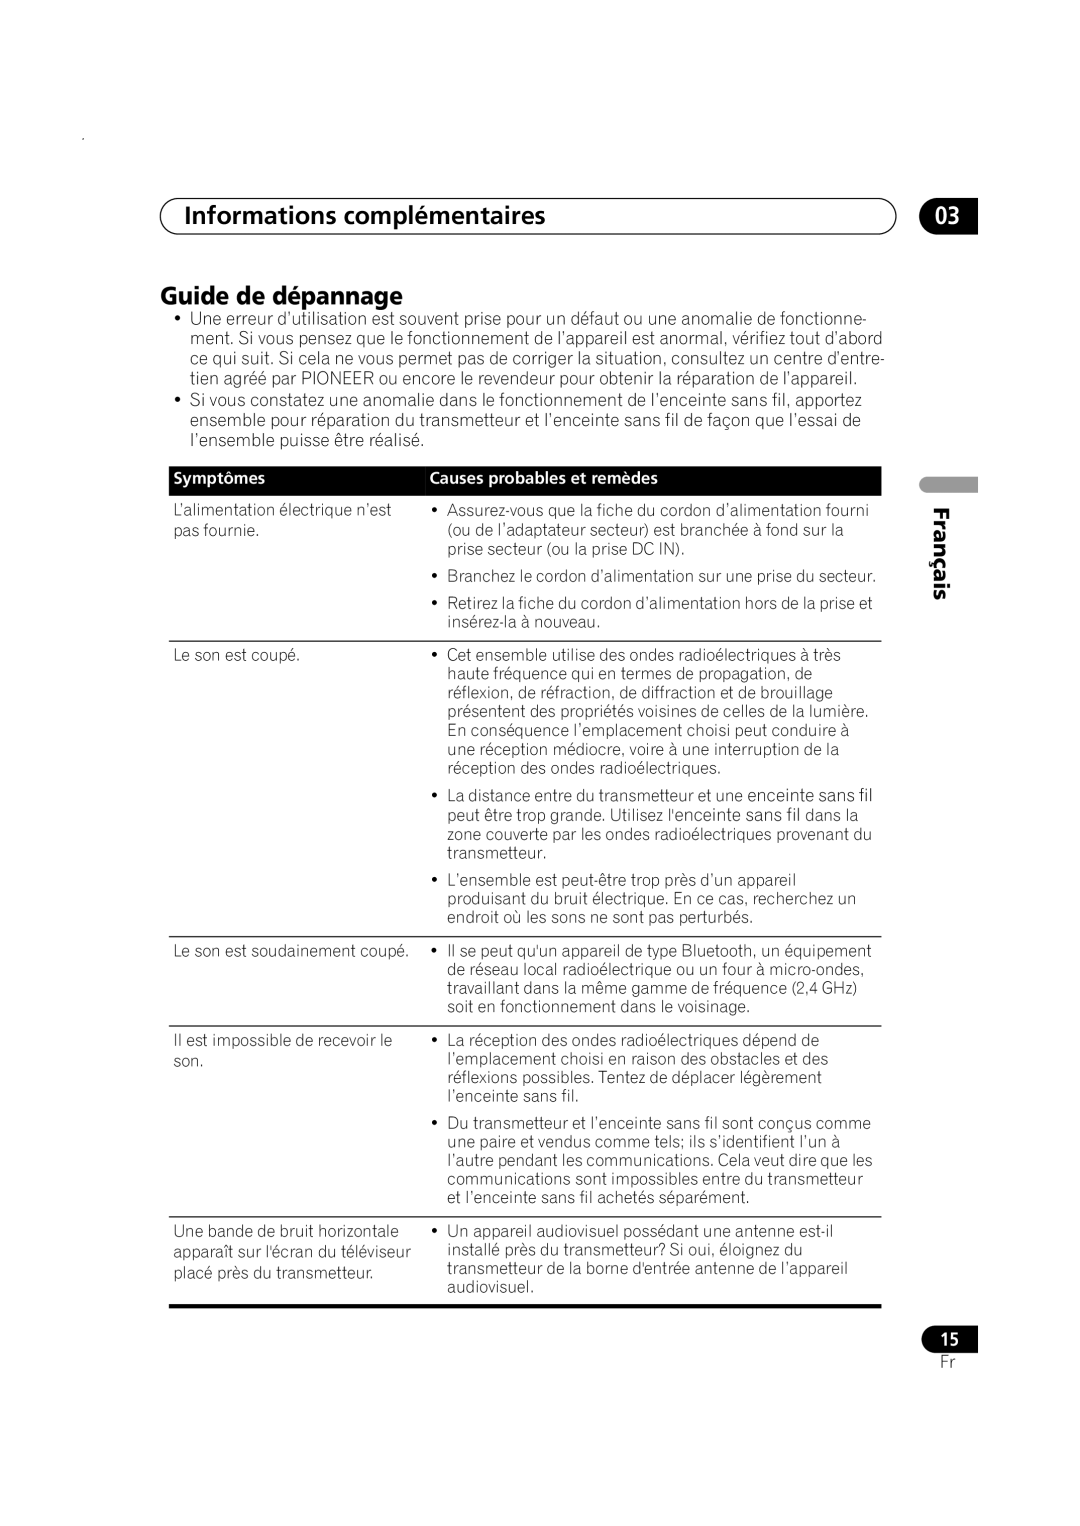 Pioneer XW-HTP550 manual Informations complémentaires Guide de dépannage, Symptômes, Causes probables et remèdes, Français 